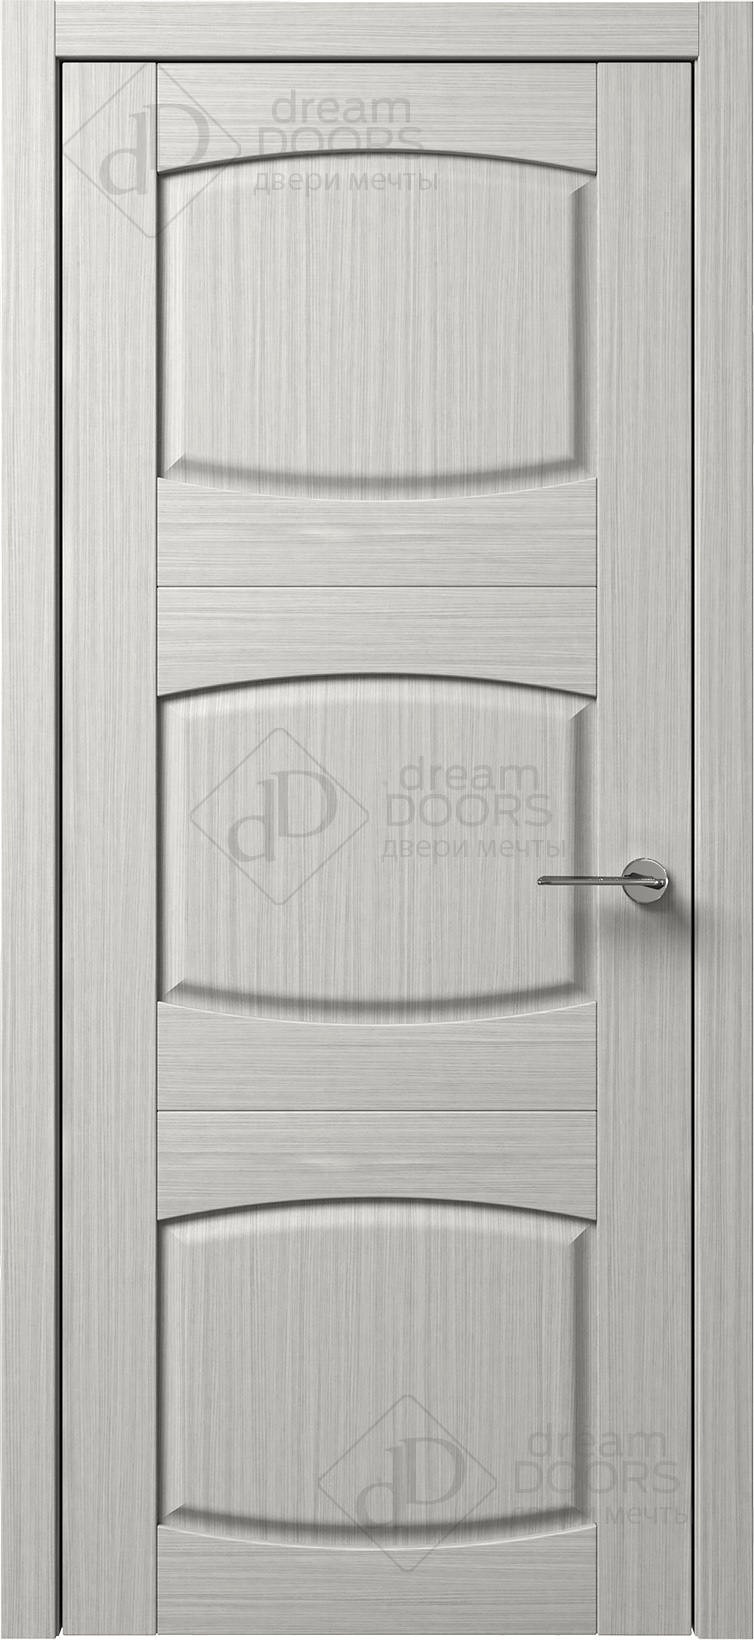 Dream Doors Межкомнатная дверь B9-3, арт. 5575 - фото №1